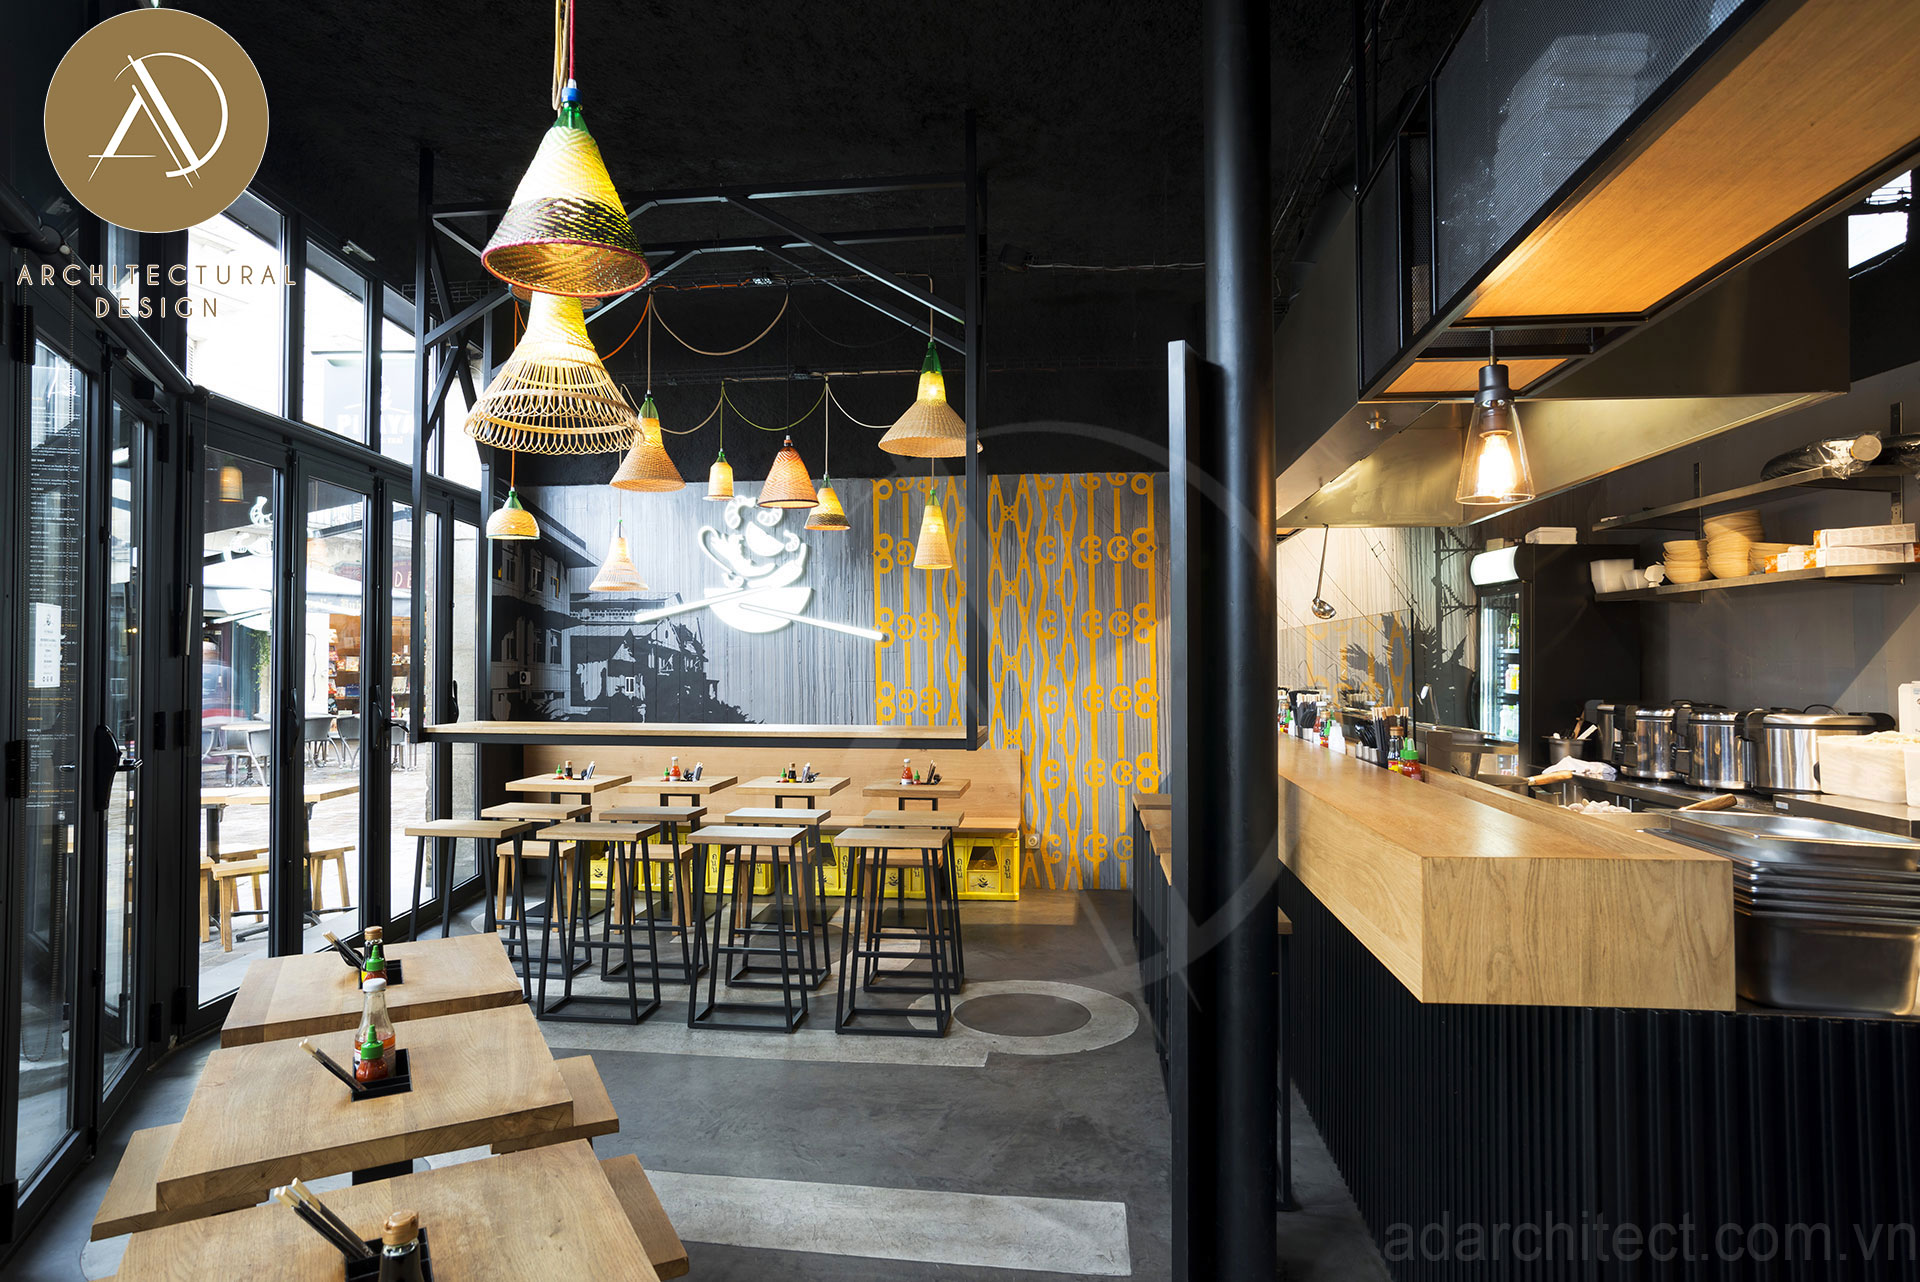 thiết kế quán ăn: mang đậm phong cách Thái Lan ấn tượng, hiện đại